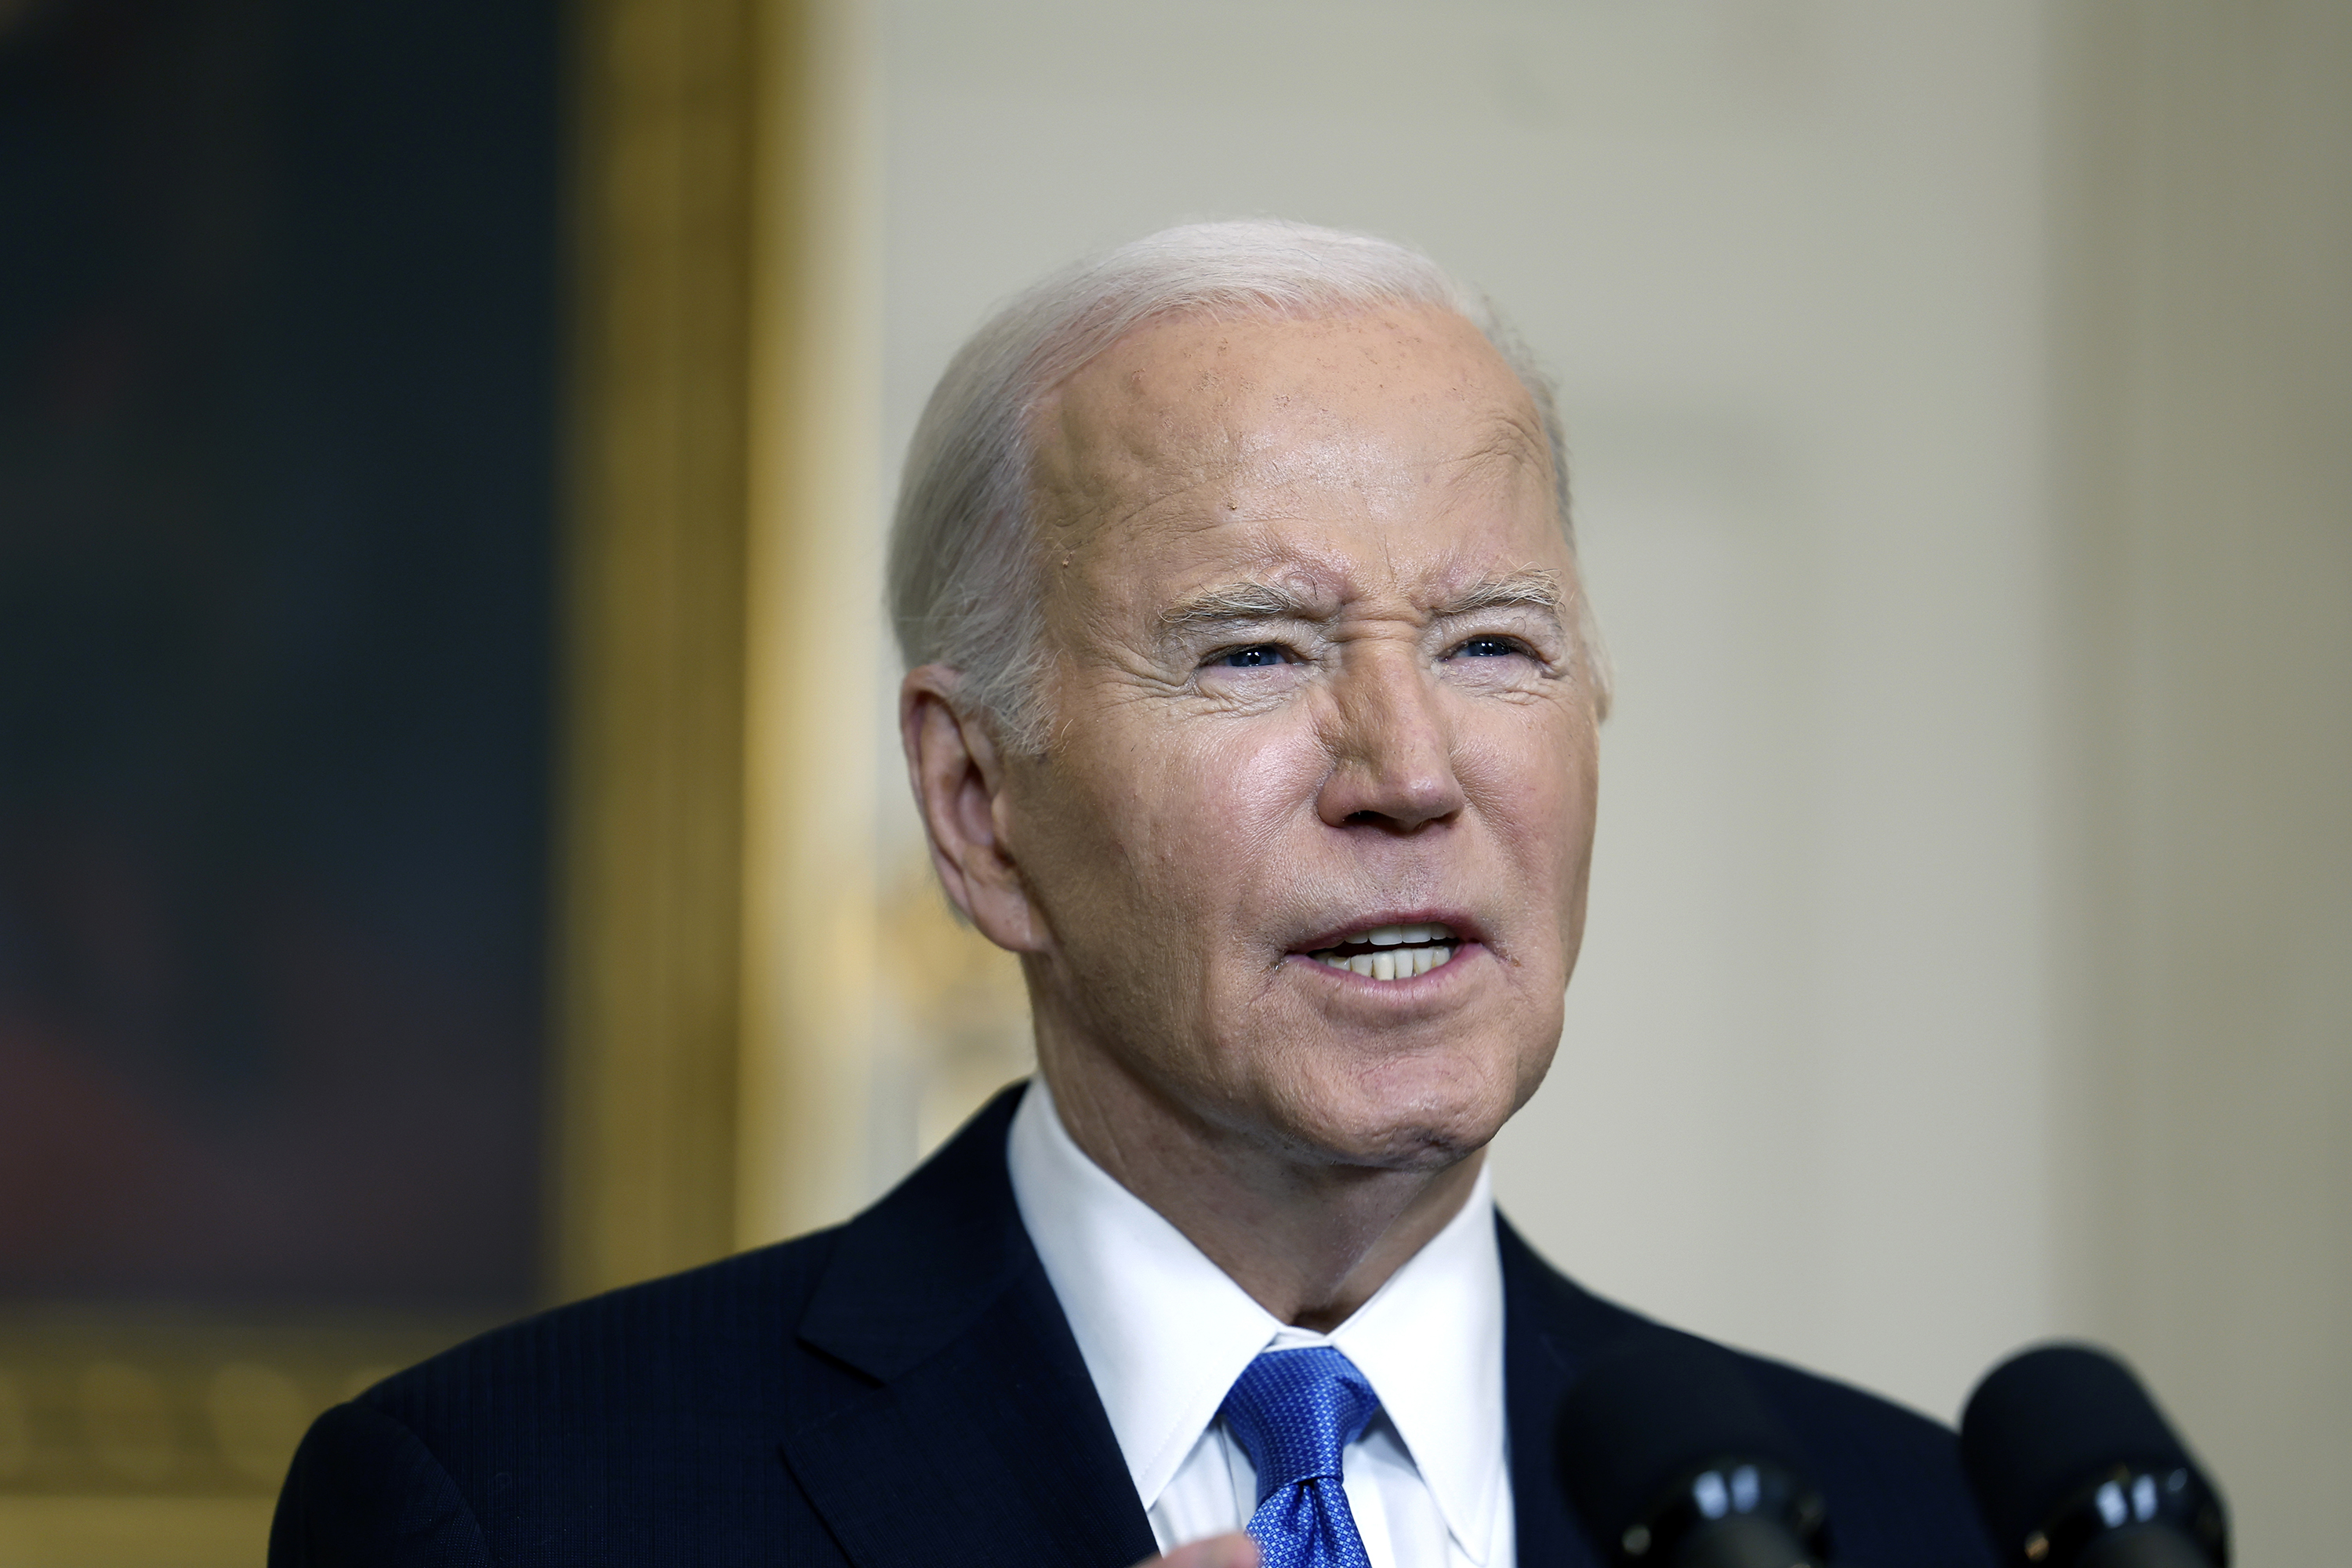 US President Joe Biden speaks at the White House on February 13, in Washington, DC.